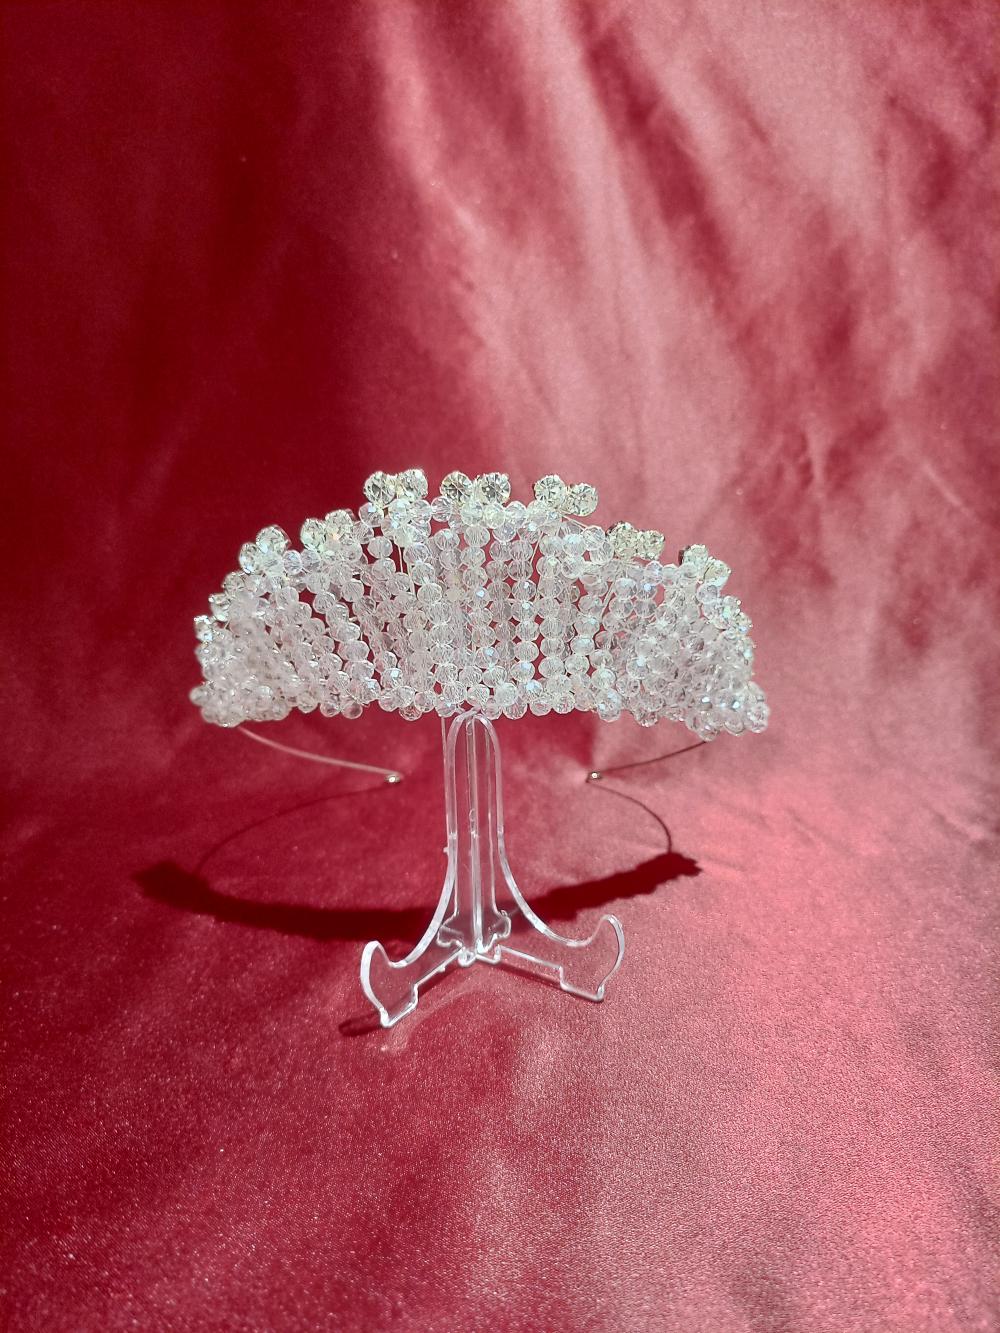 Kristalize Boncuklardan Oluşan Yüksek Prenses Model Gelin Tacı